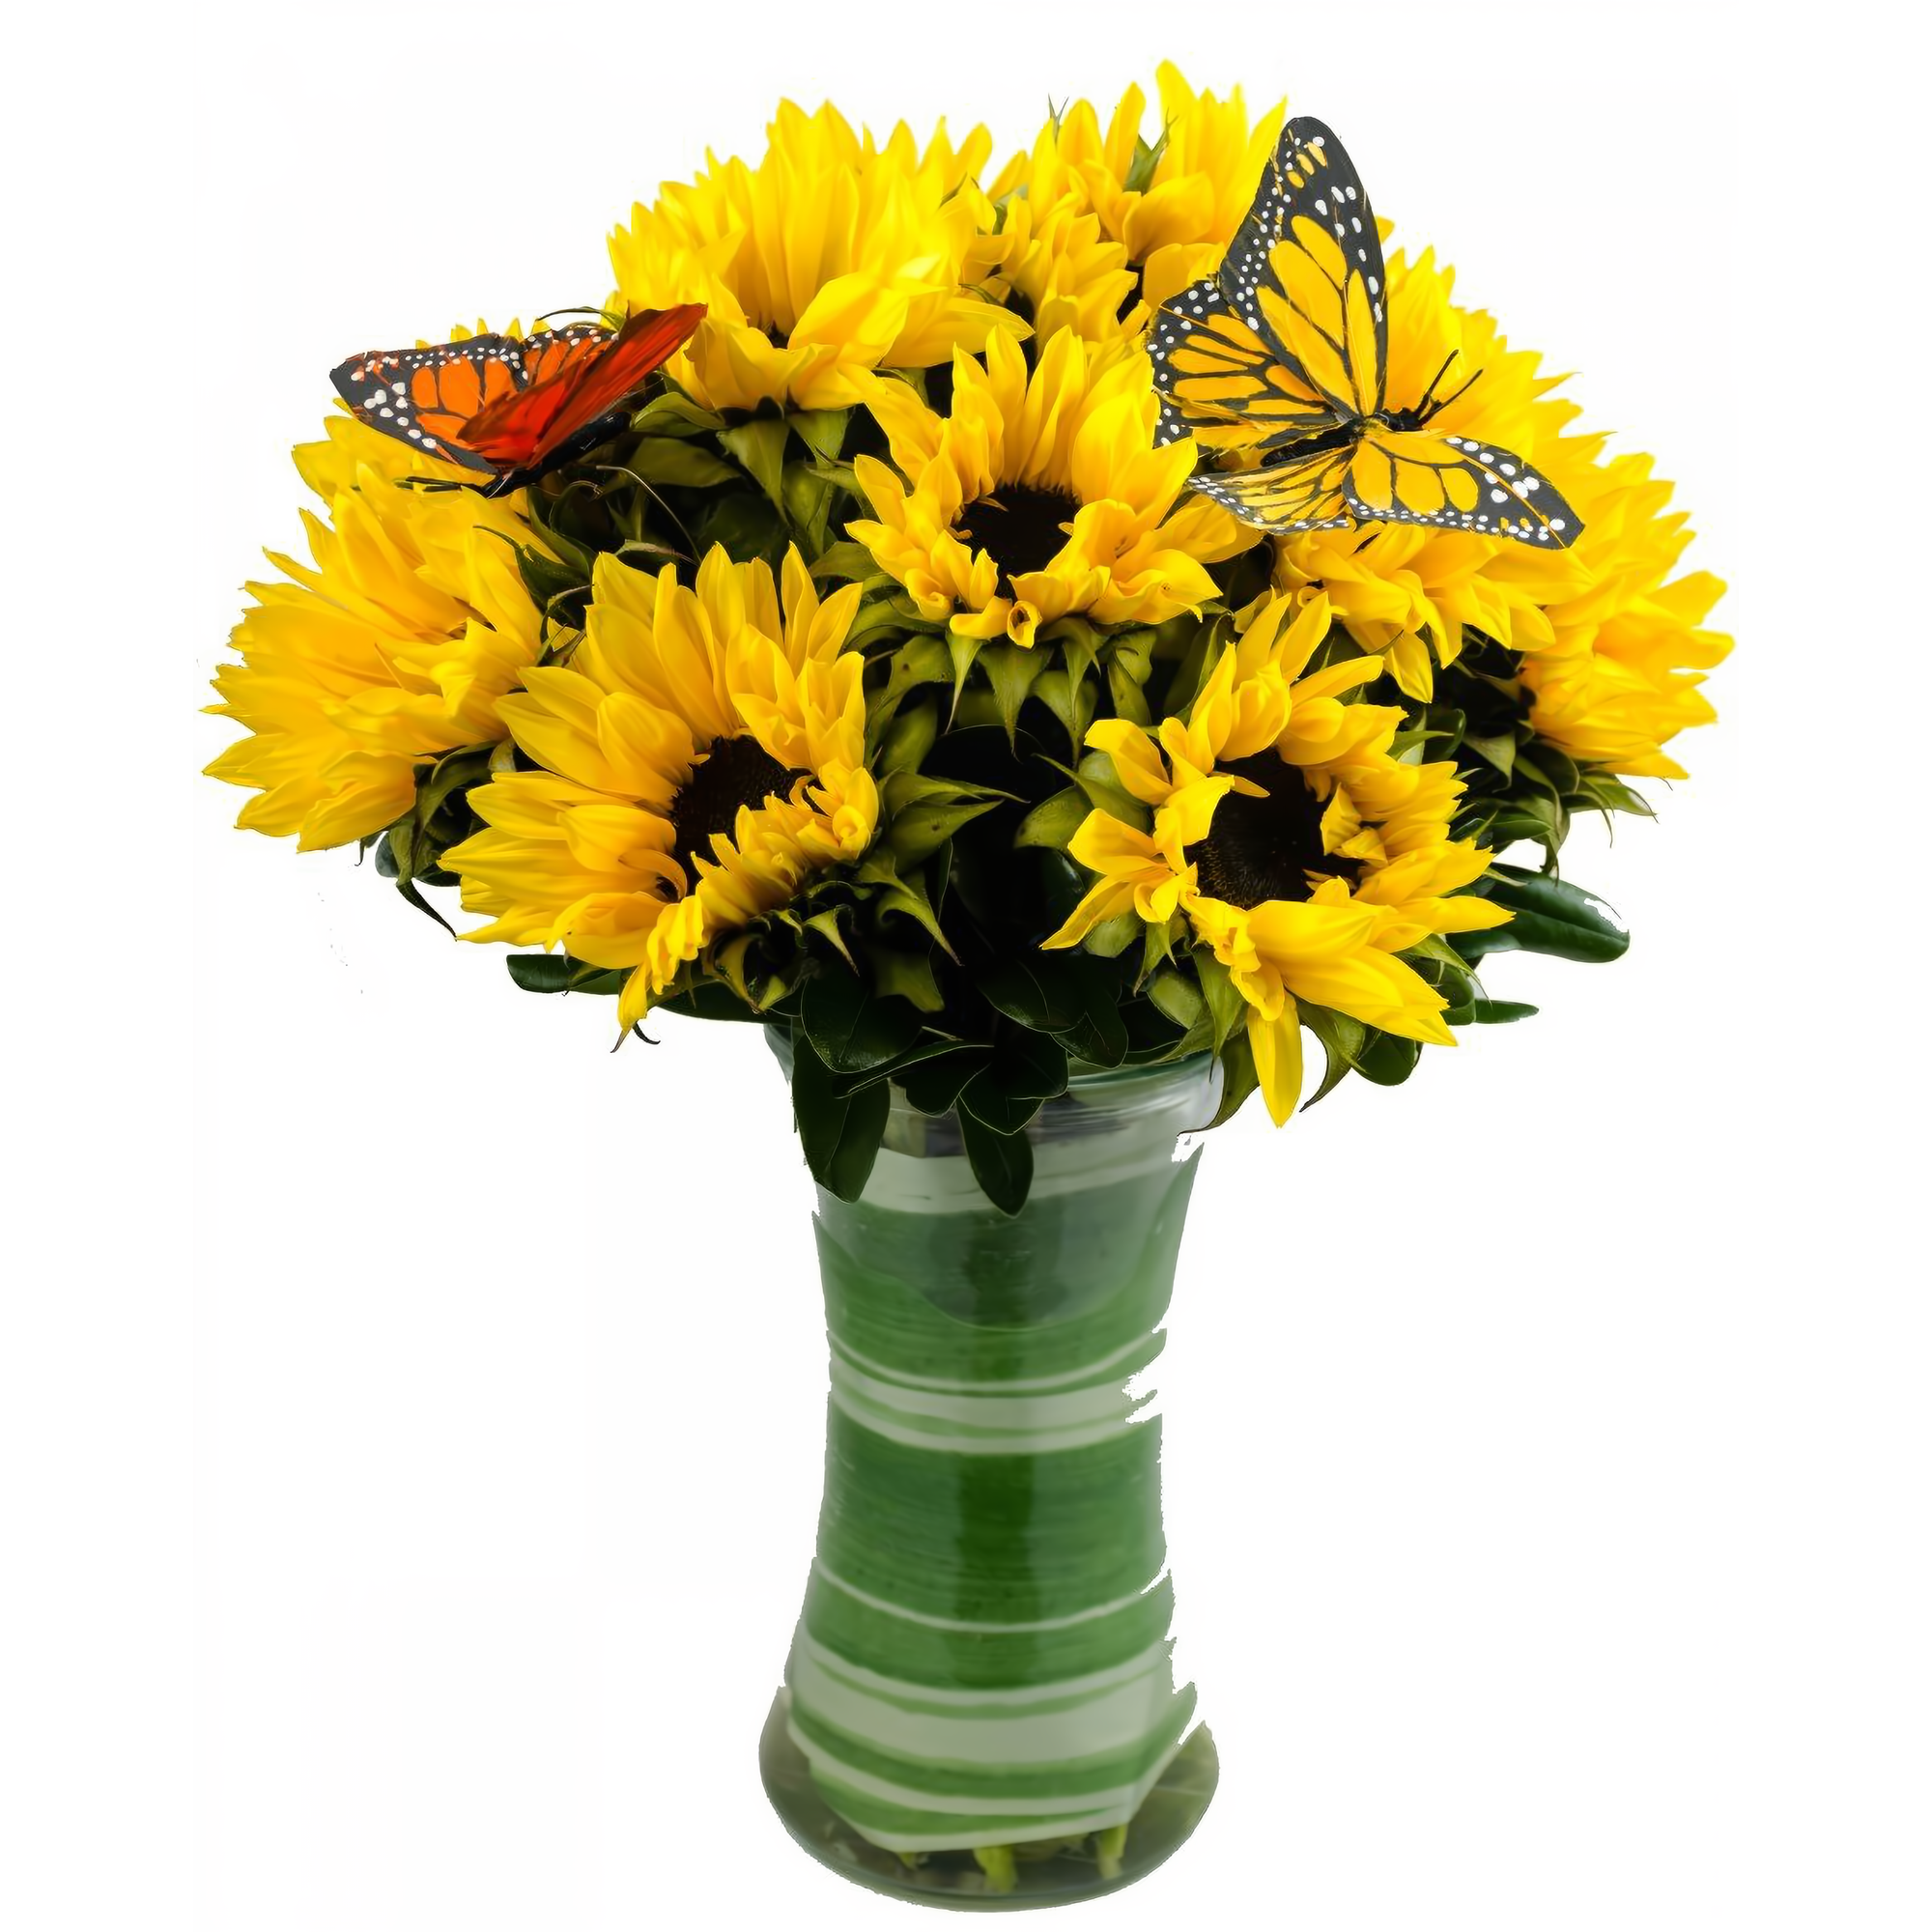 Manhattan Flower Delivery - Sunflower Showers - Birthdays